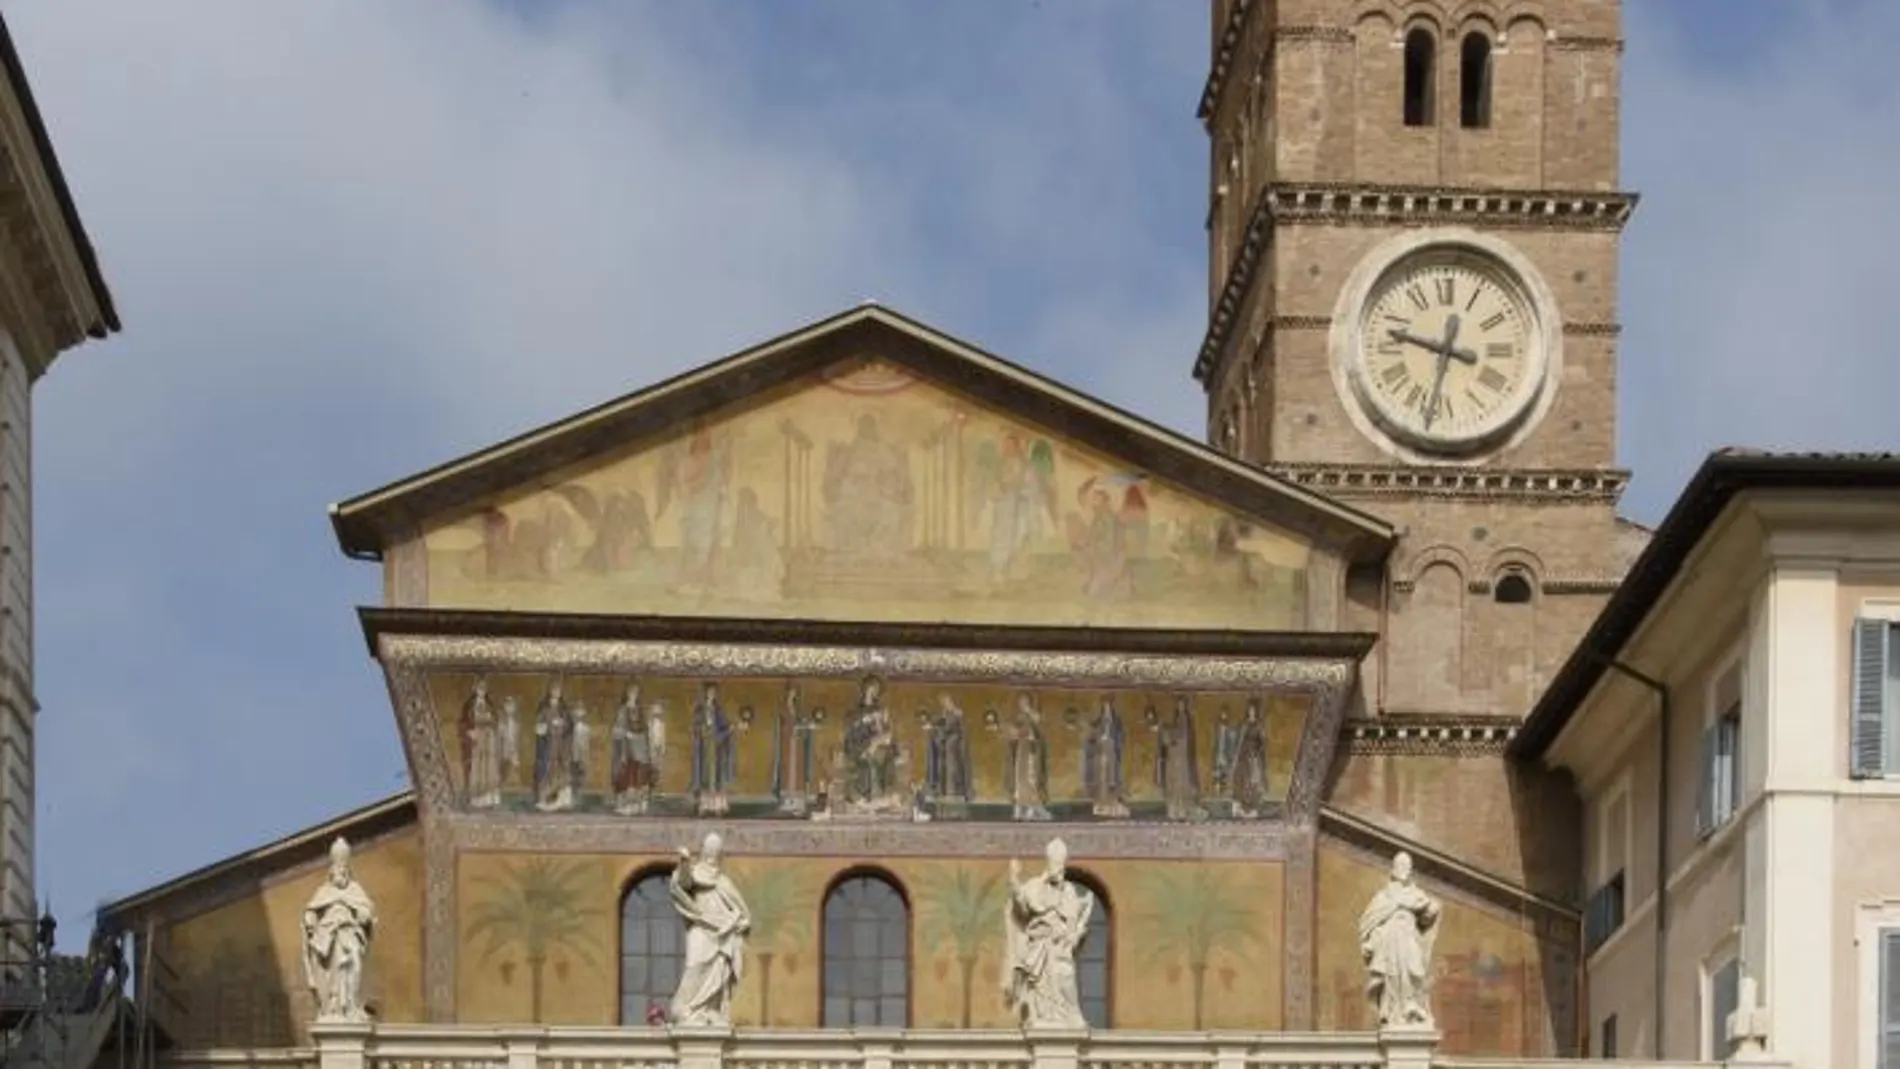 La cara renovada de la Basílica de Santa María inTrastevere en Roma